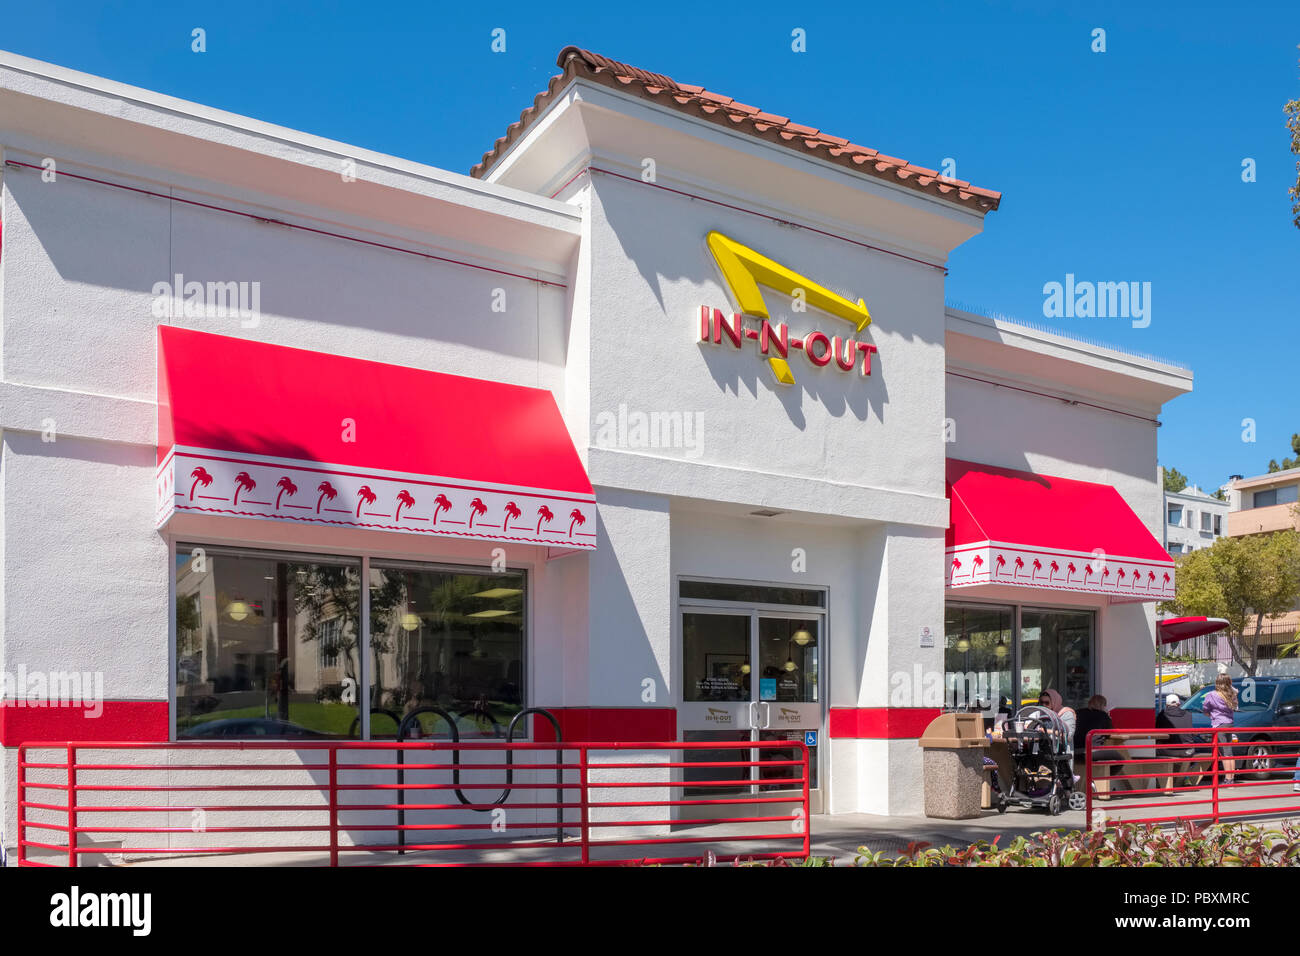 En N Out Burger restaurante de comida rápida construcción exterior, Hollywood, Los Ángeles, California, Los Ángeles, CA, EE.UU. Foto de stock